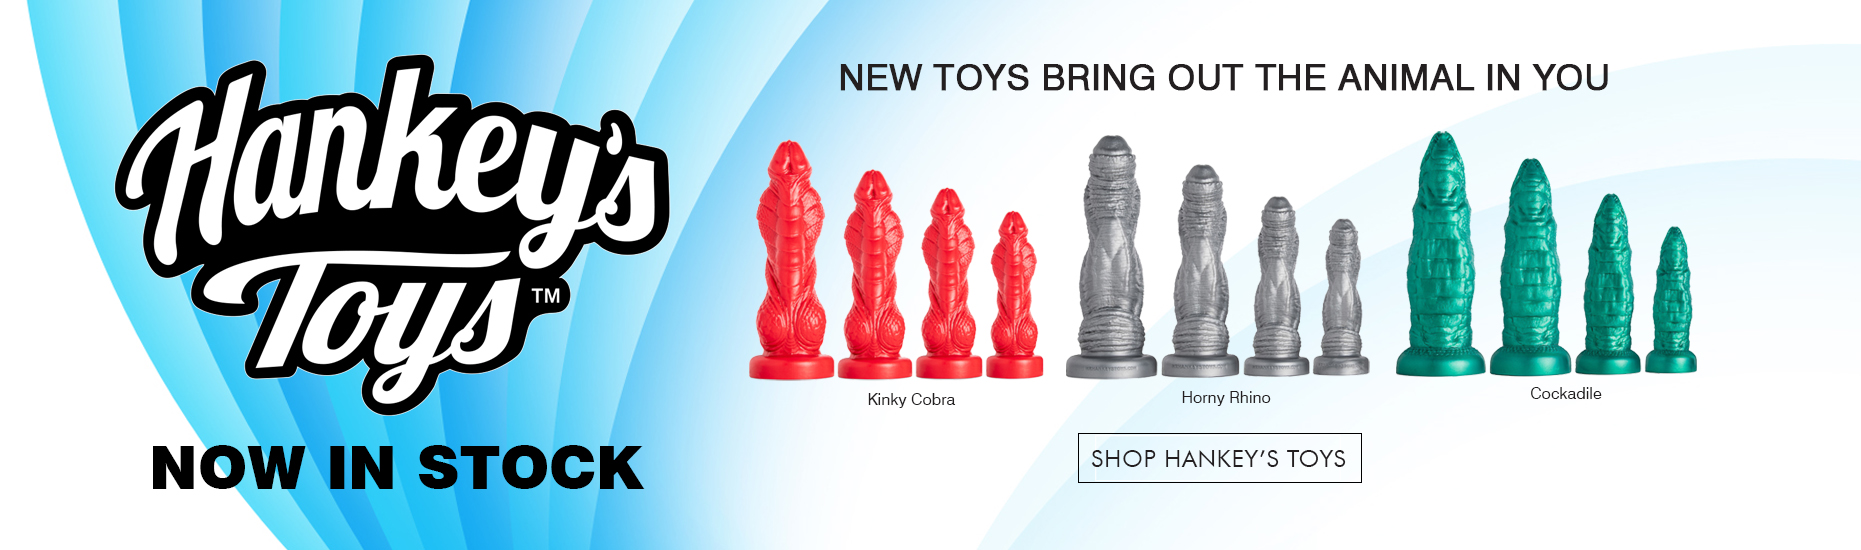 Hankey's Toys - Now In Stock!